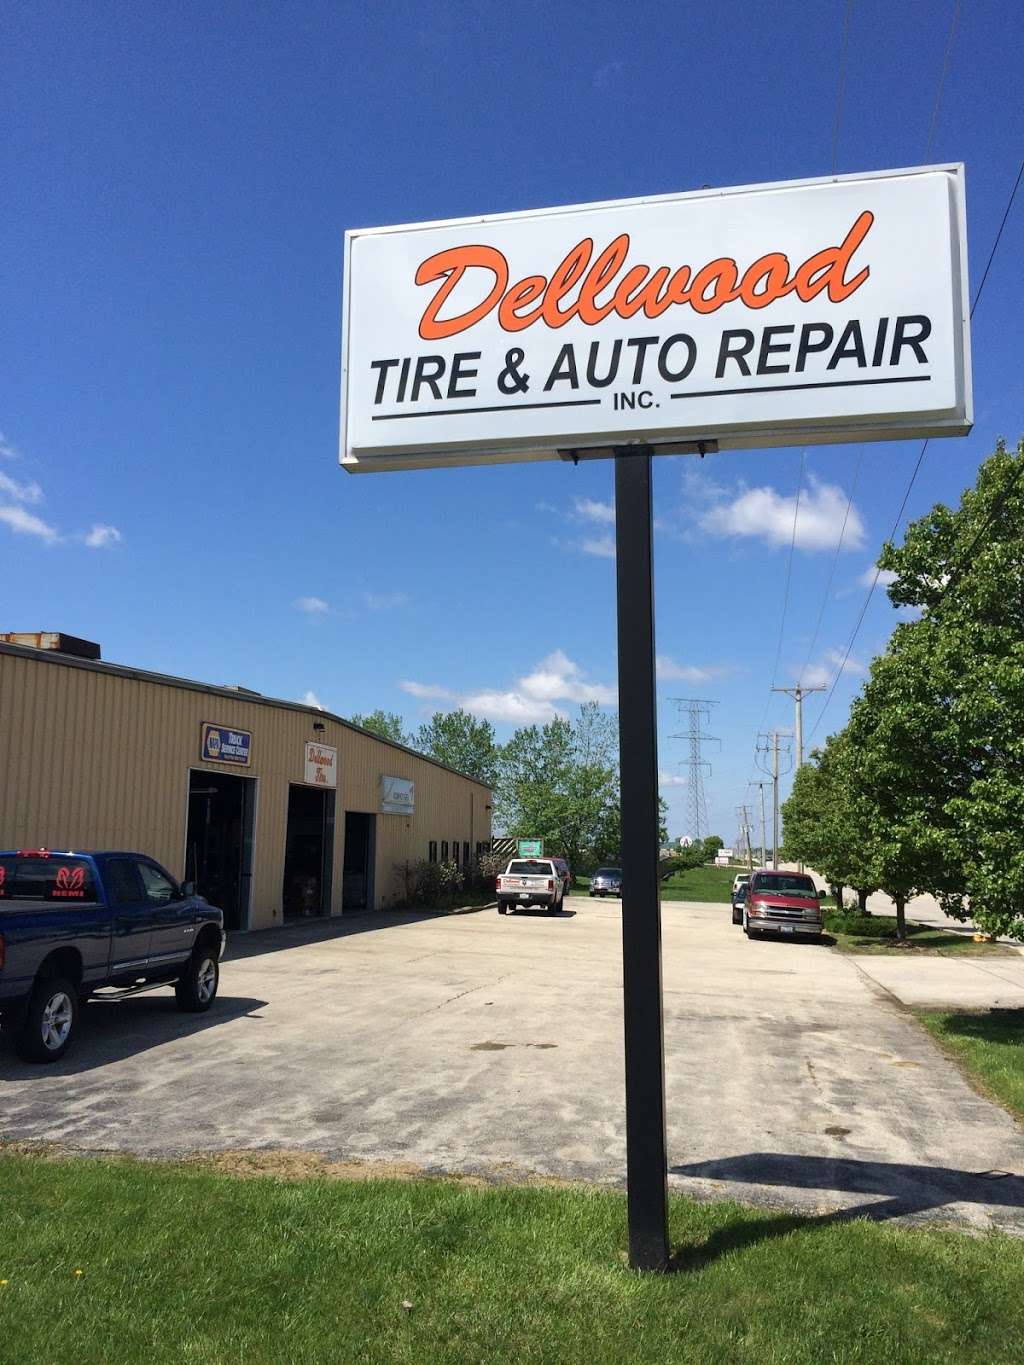 Dellwood Tire & Auto Repair - Minooka Automotive & Commercial Ti | 530 W Mondamin St, Minooka, IL 60447 | Phone: (815) 467-0210